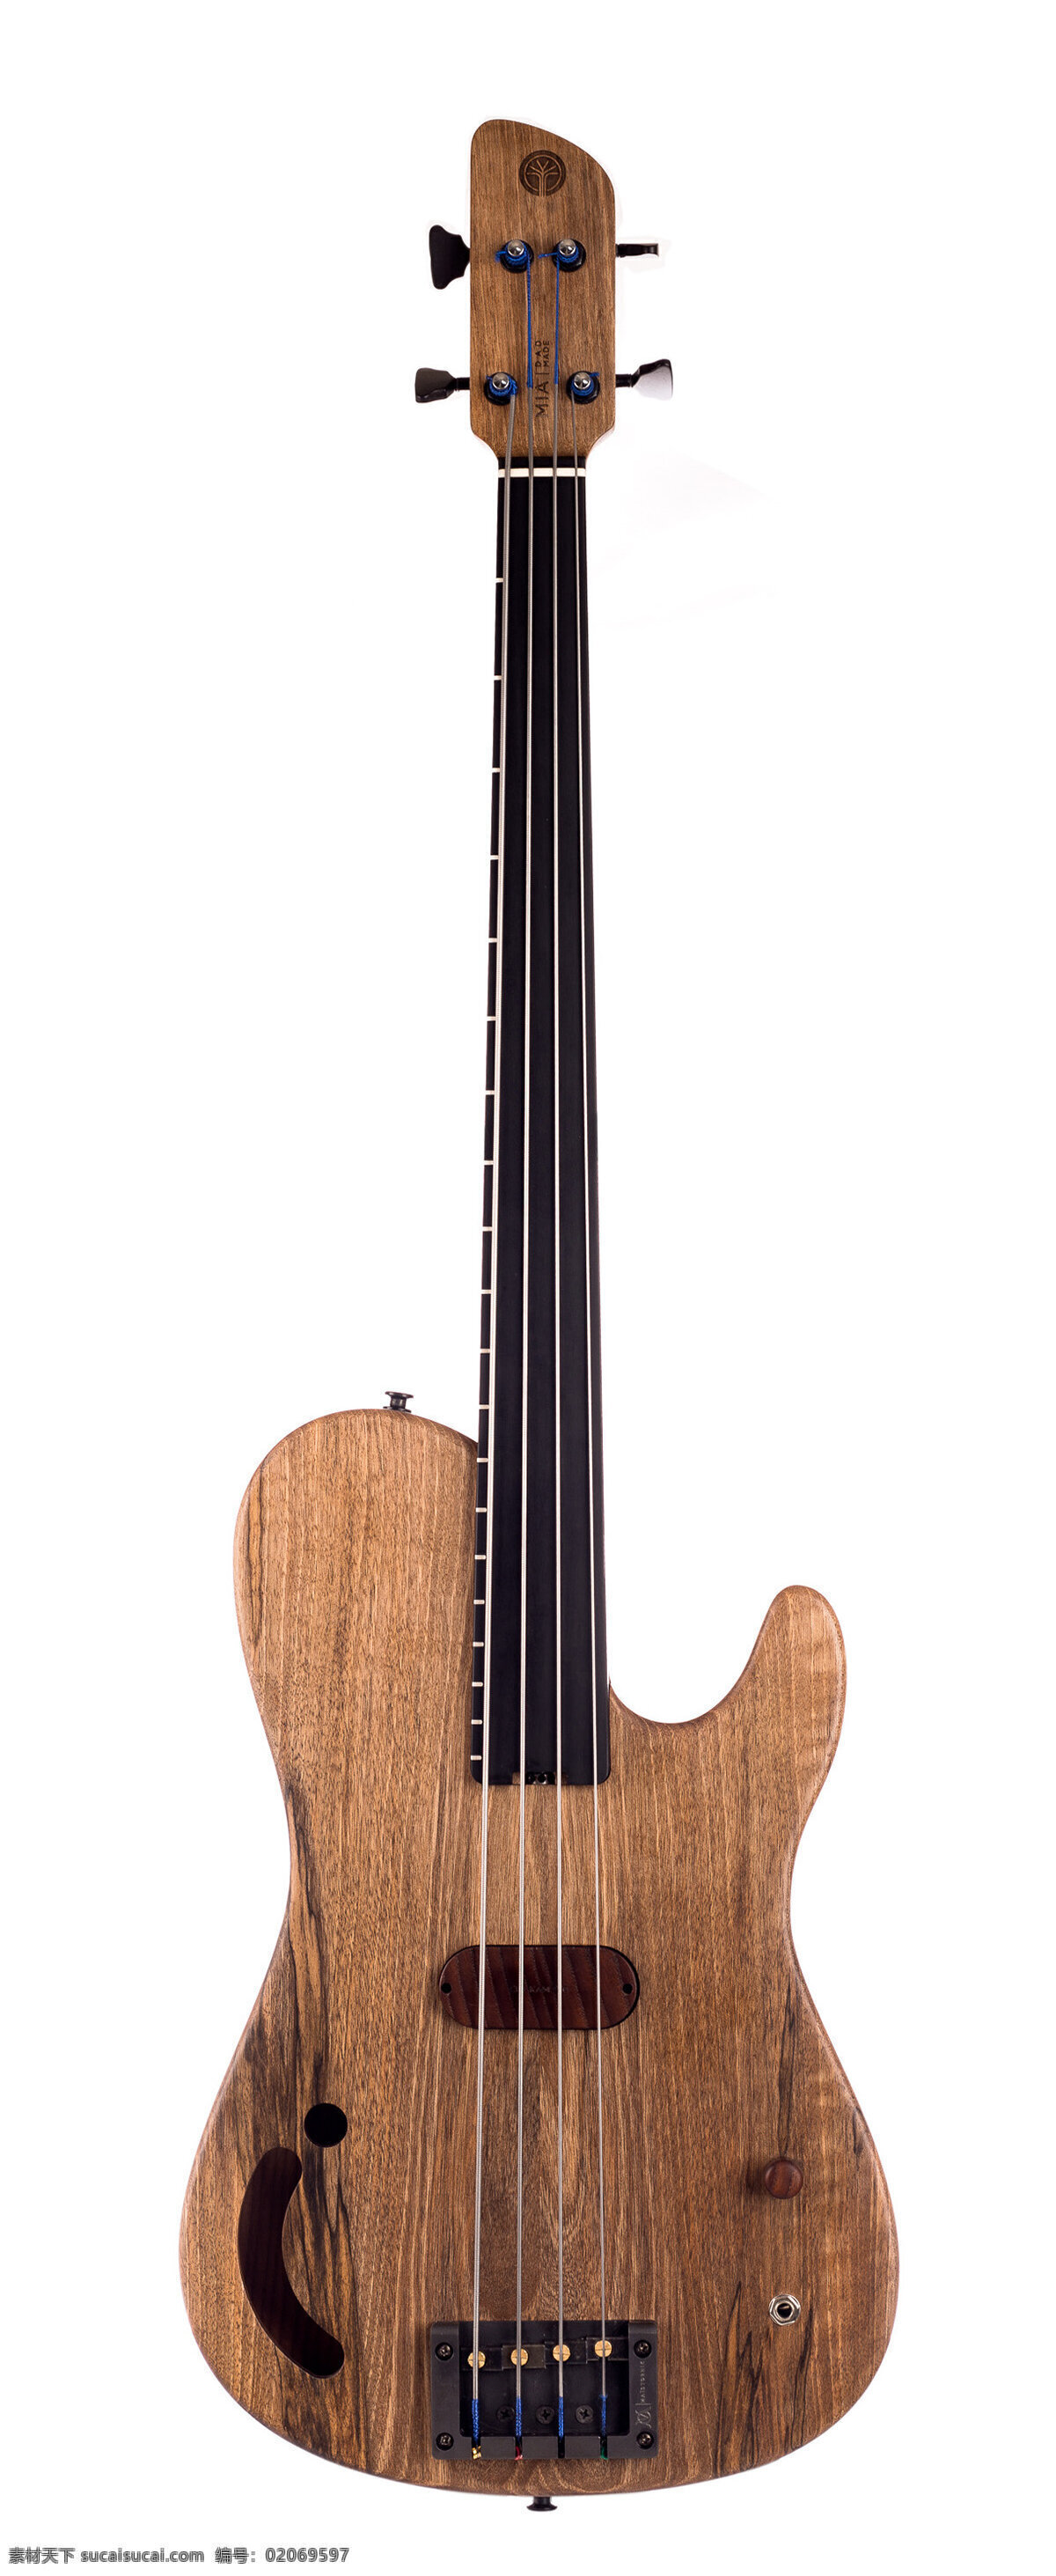 产品设计 概念设计 吉他 模型 木质 摇滚 创意